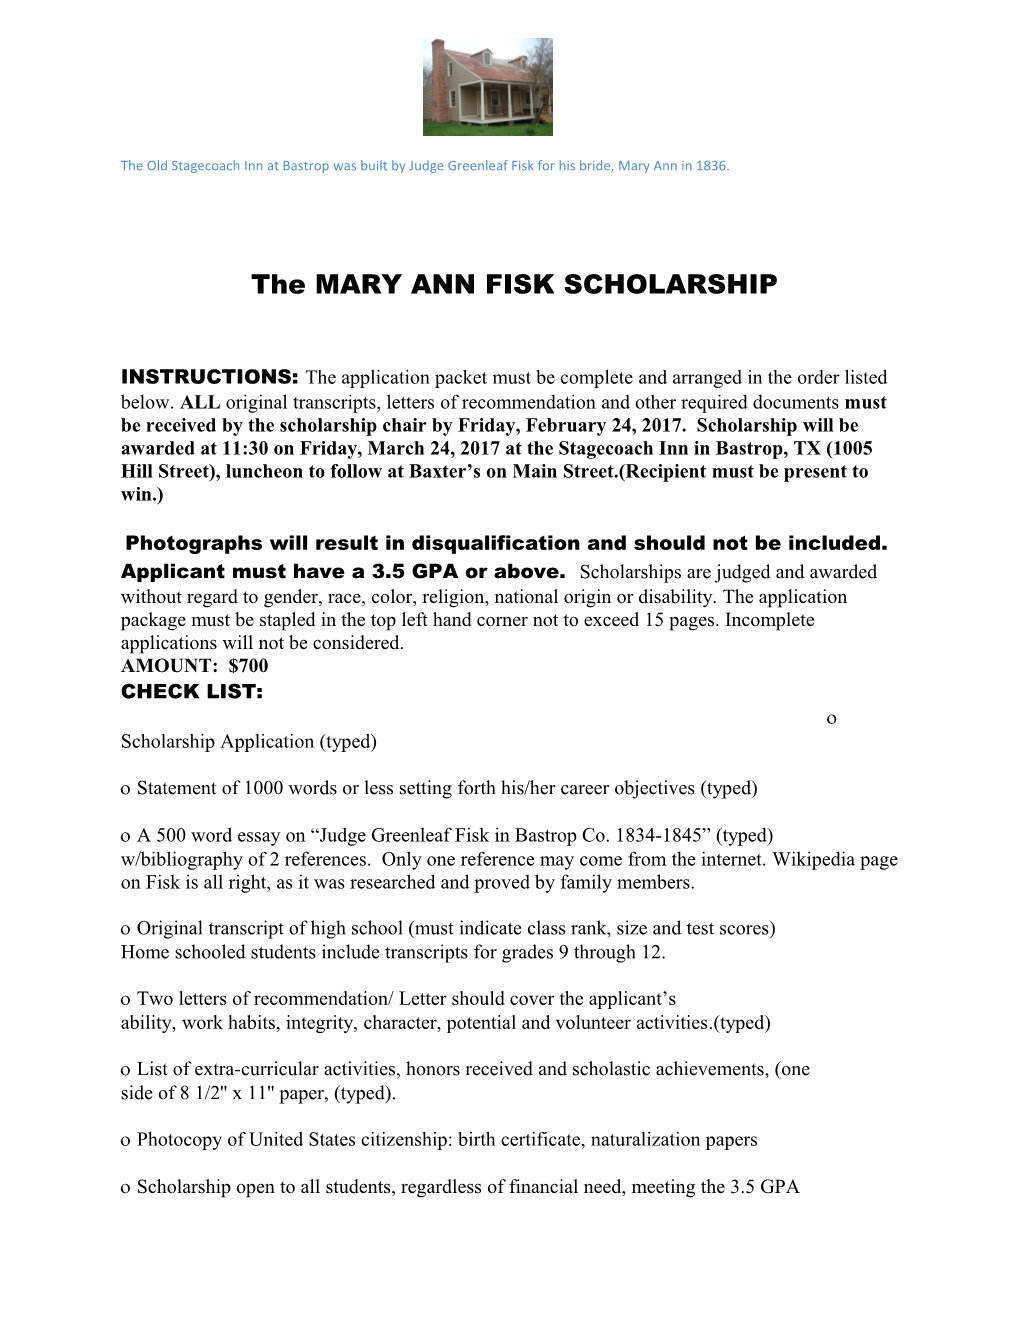 The MARY ANN FISK SCHOLARSHIP